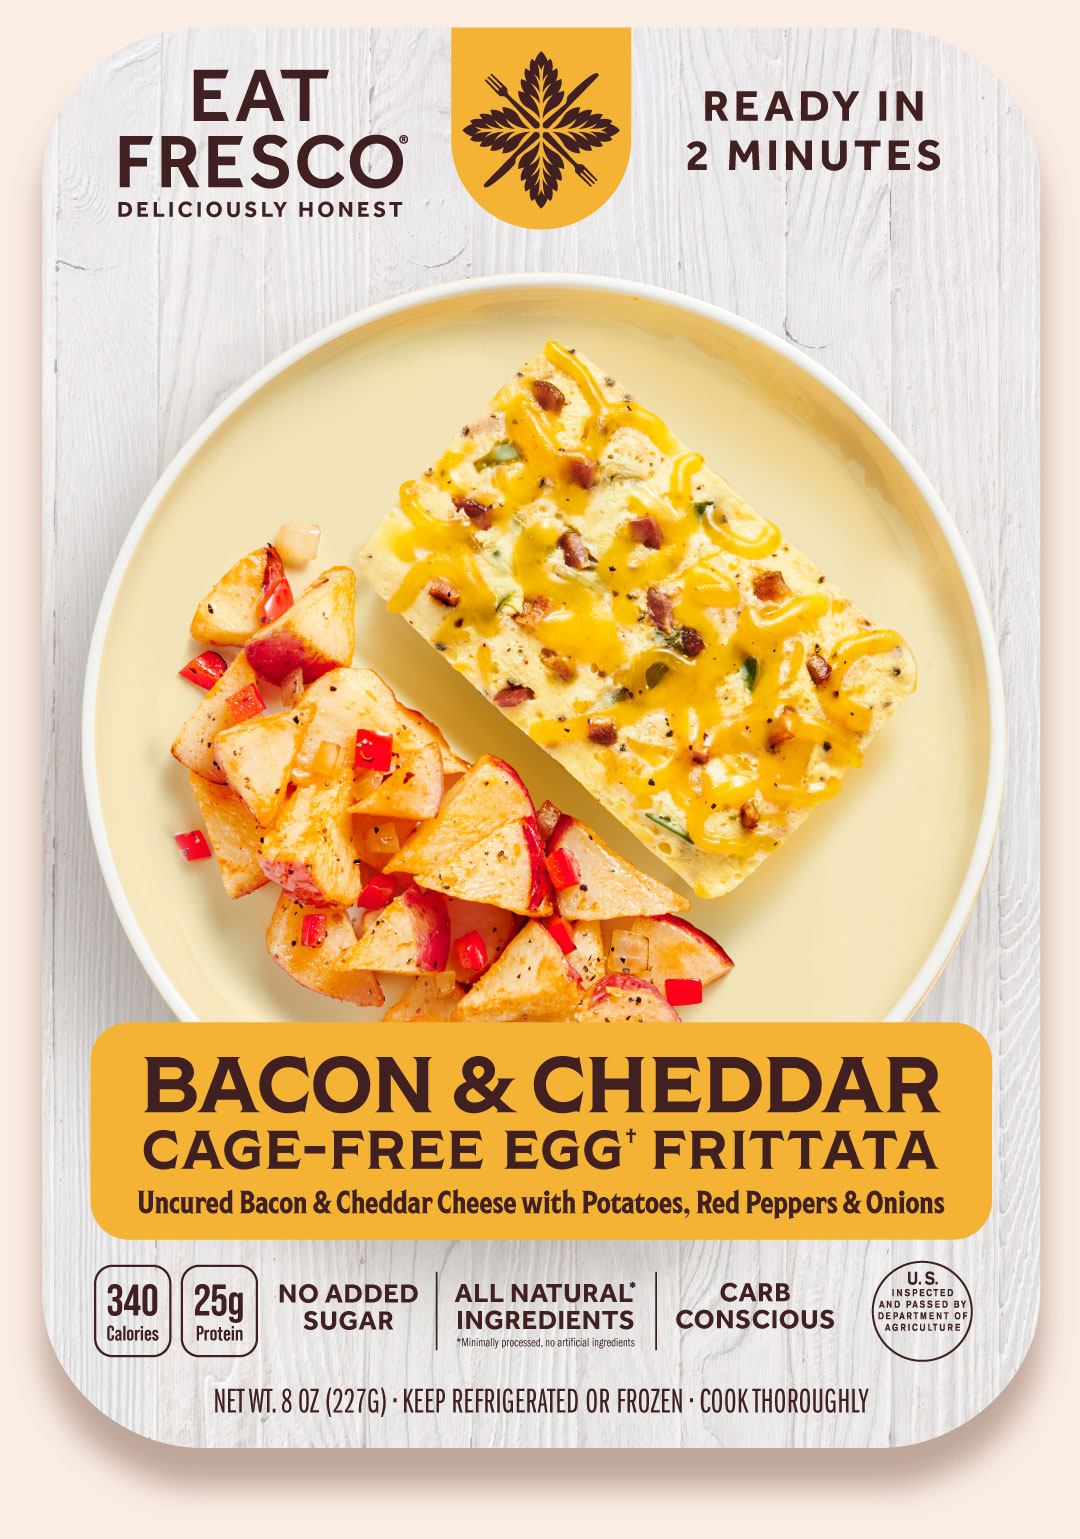 Eat Fresco Bacon & Cheddar Cage-Free Egg Frittata